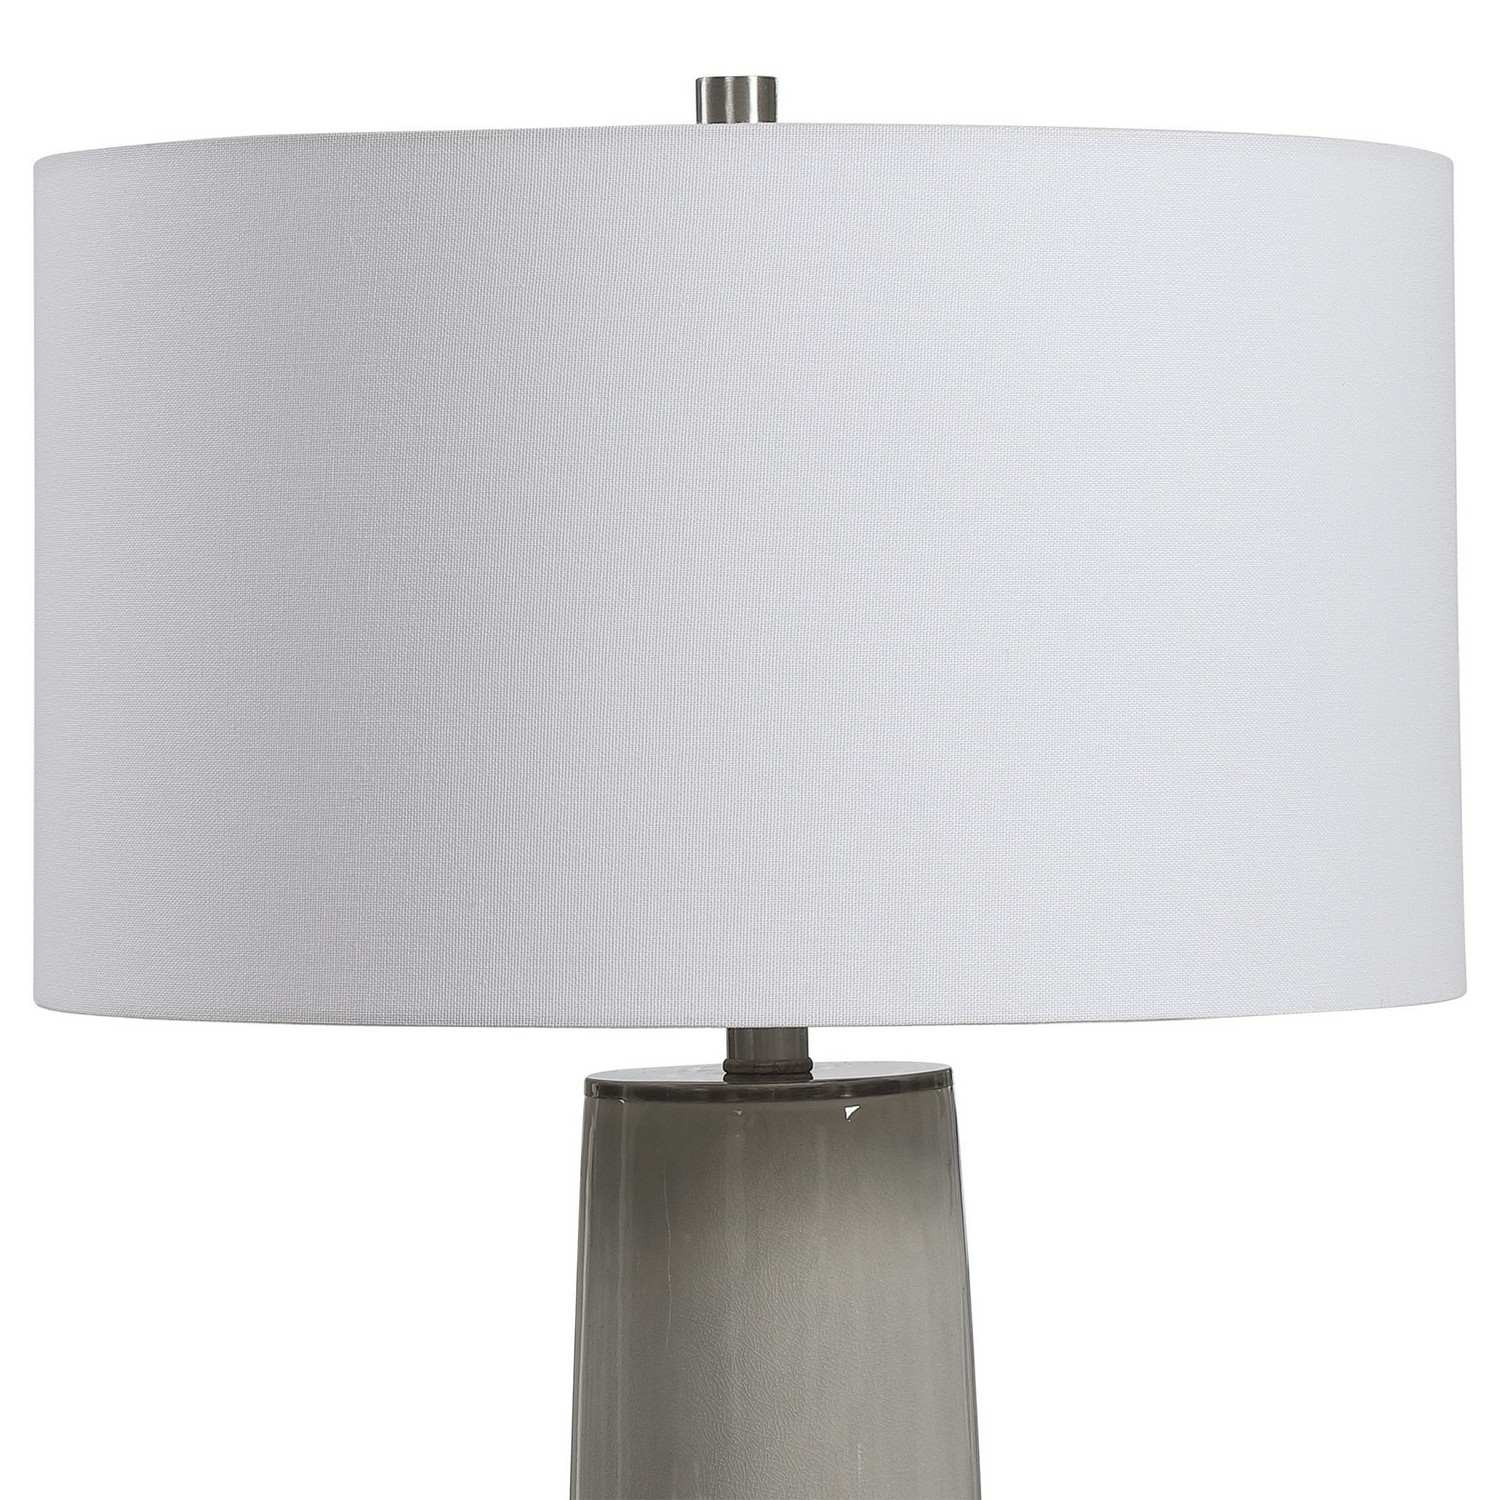 Uttermost Abdel Glaze Table Lamp - Gray